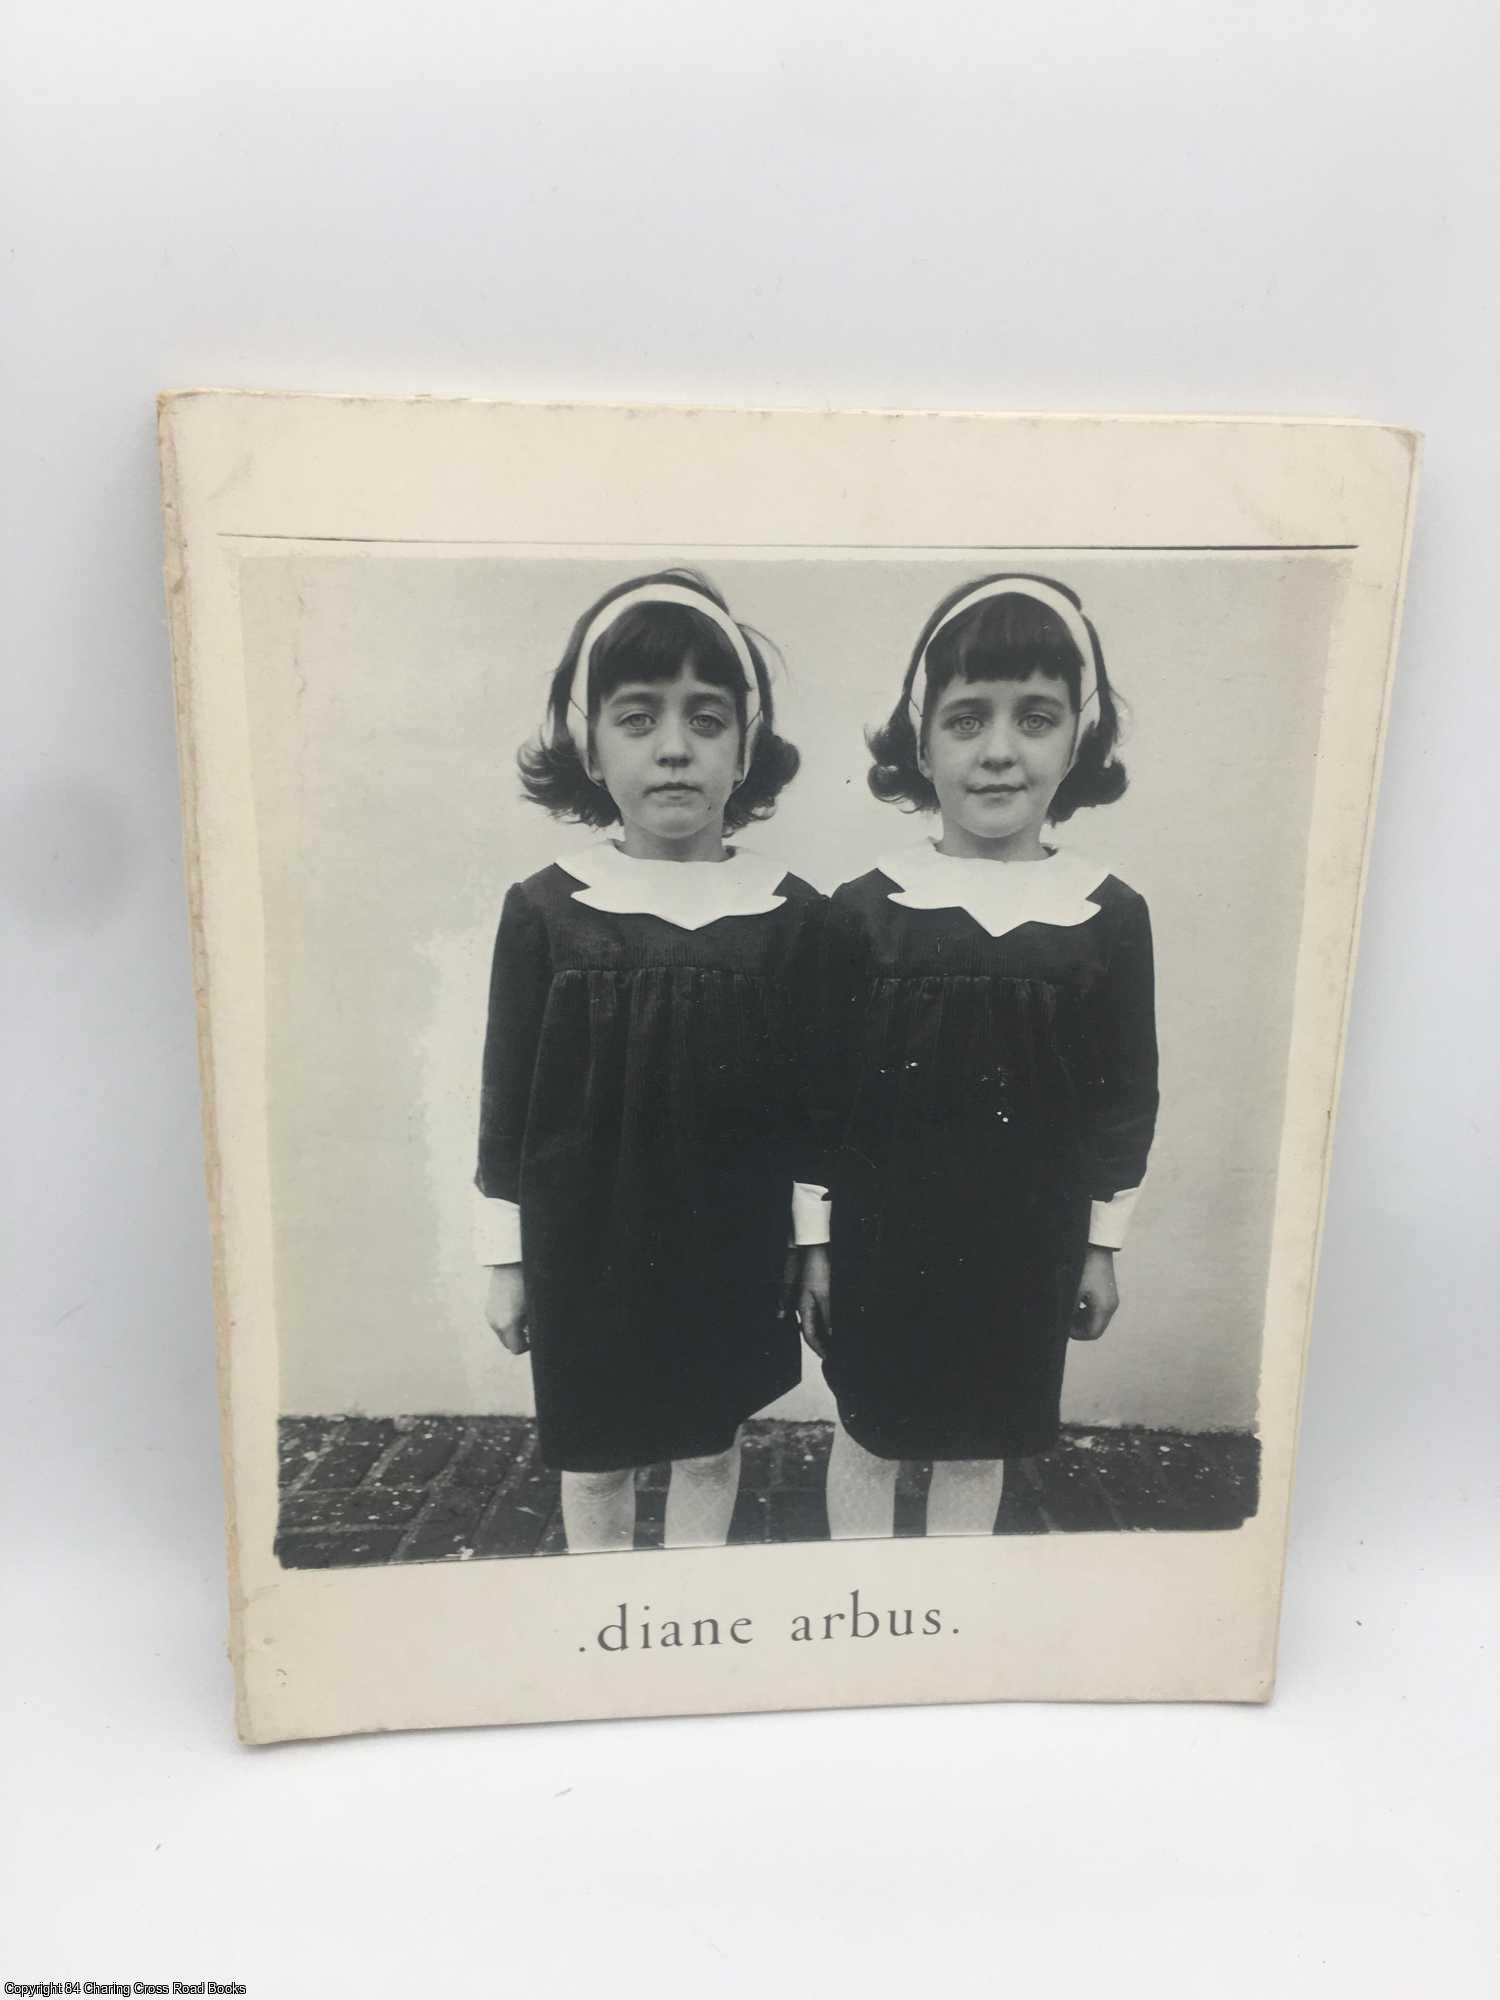 Arbus, Diane - Diane Arbus: An Aperture Monograph